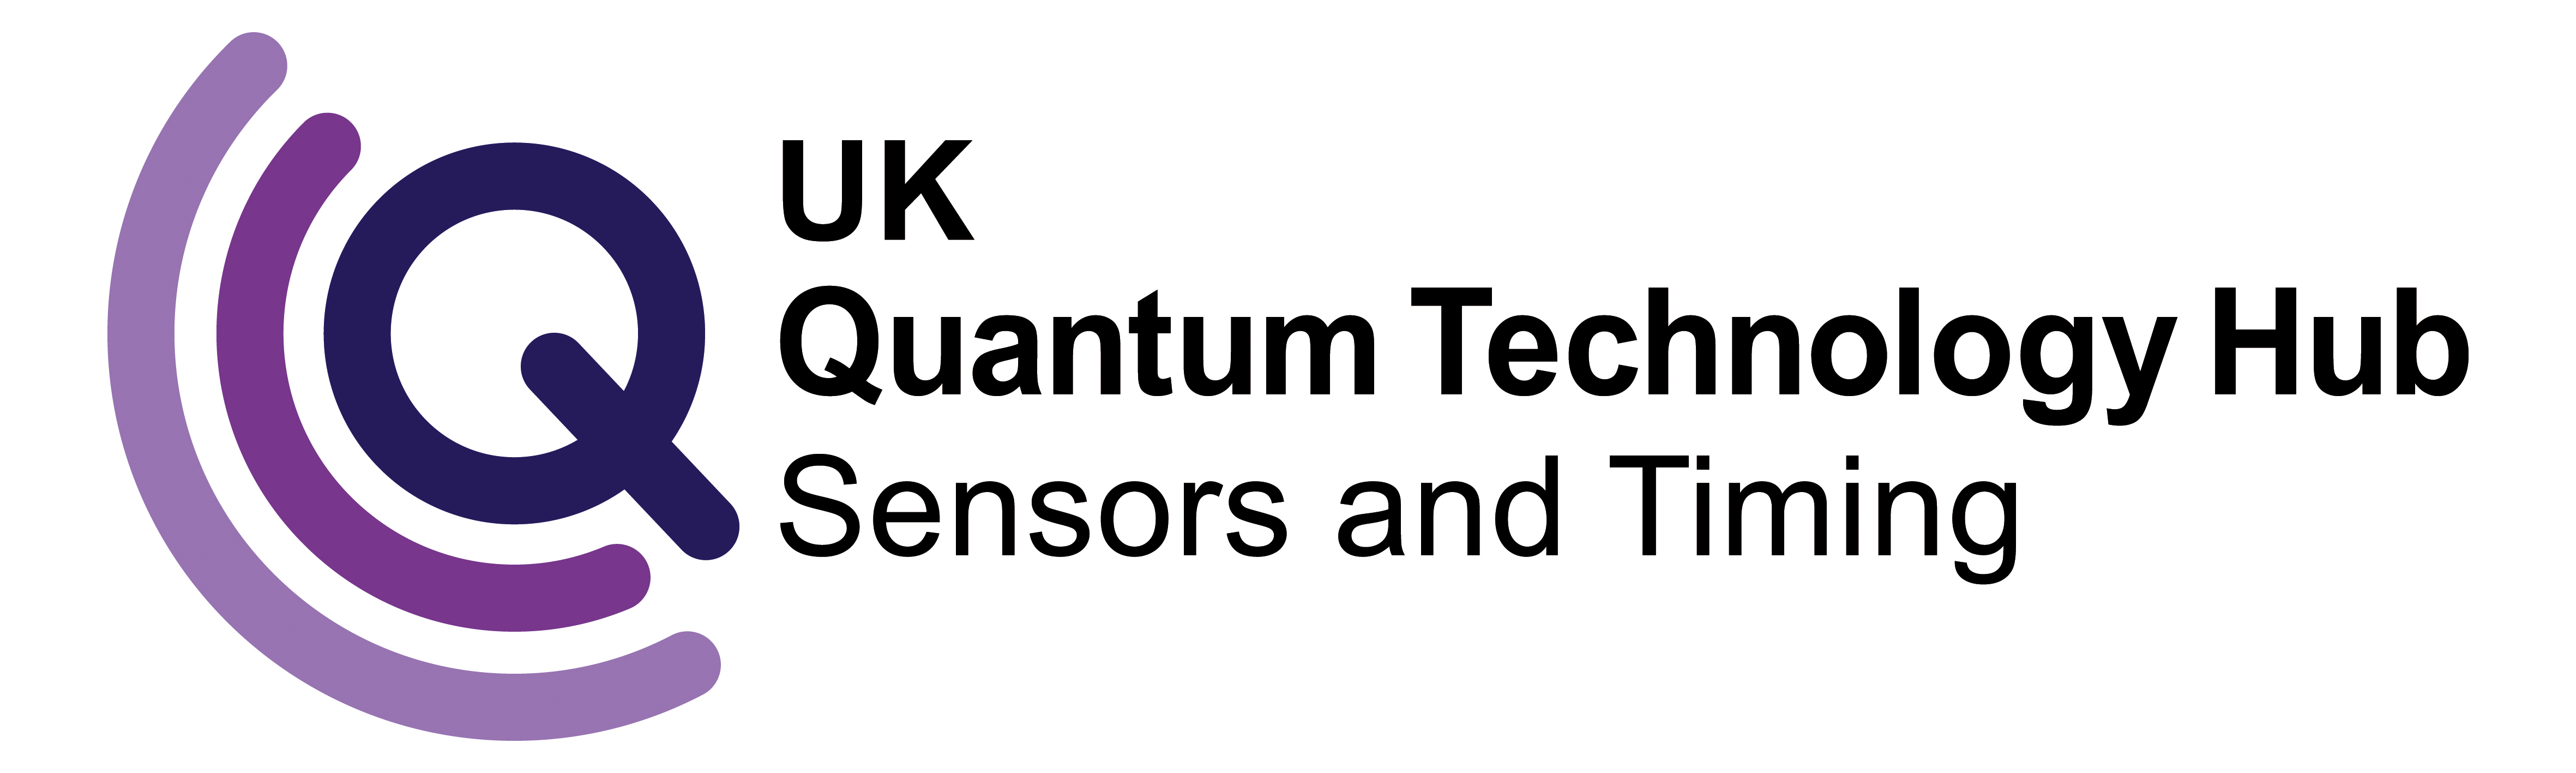 Quantum Sensing and Timing Hub logo